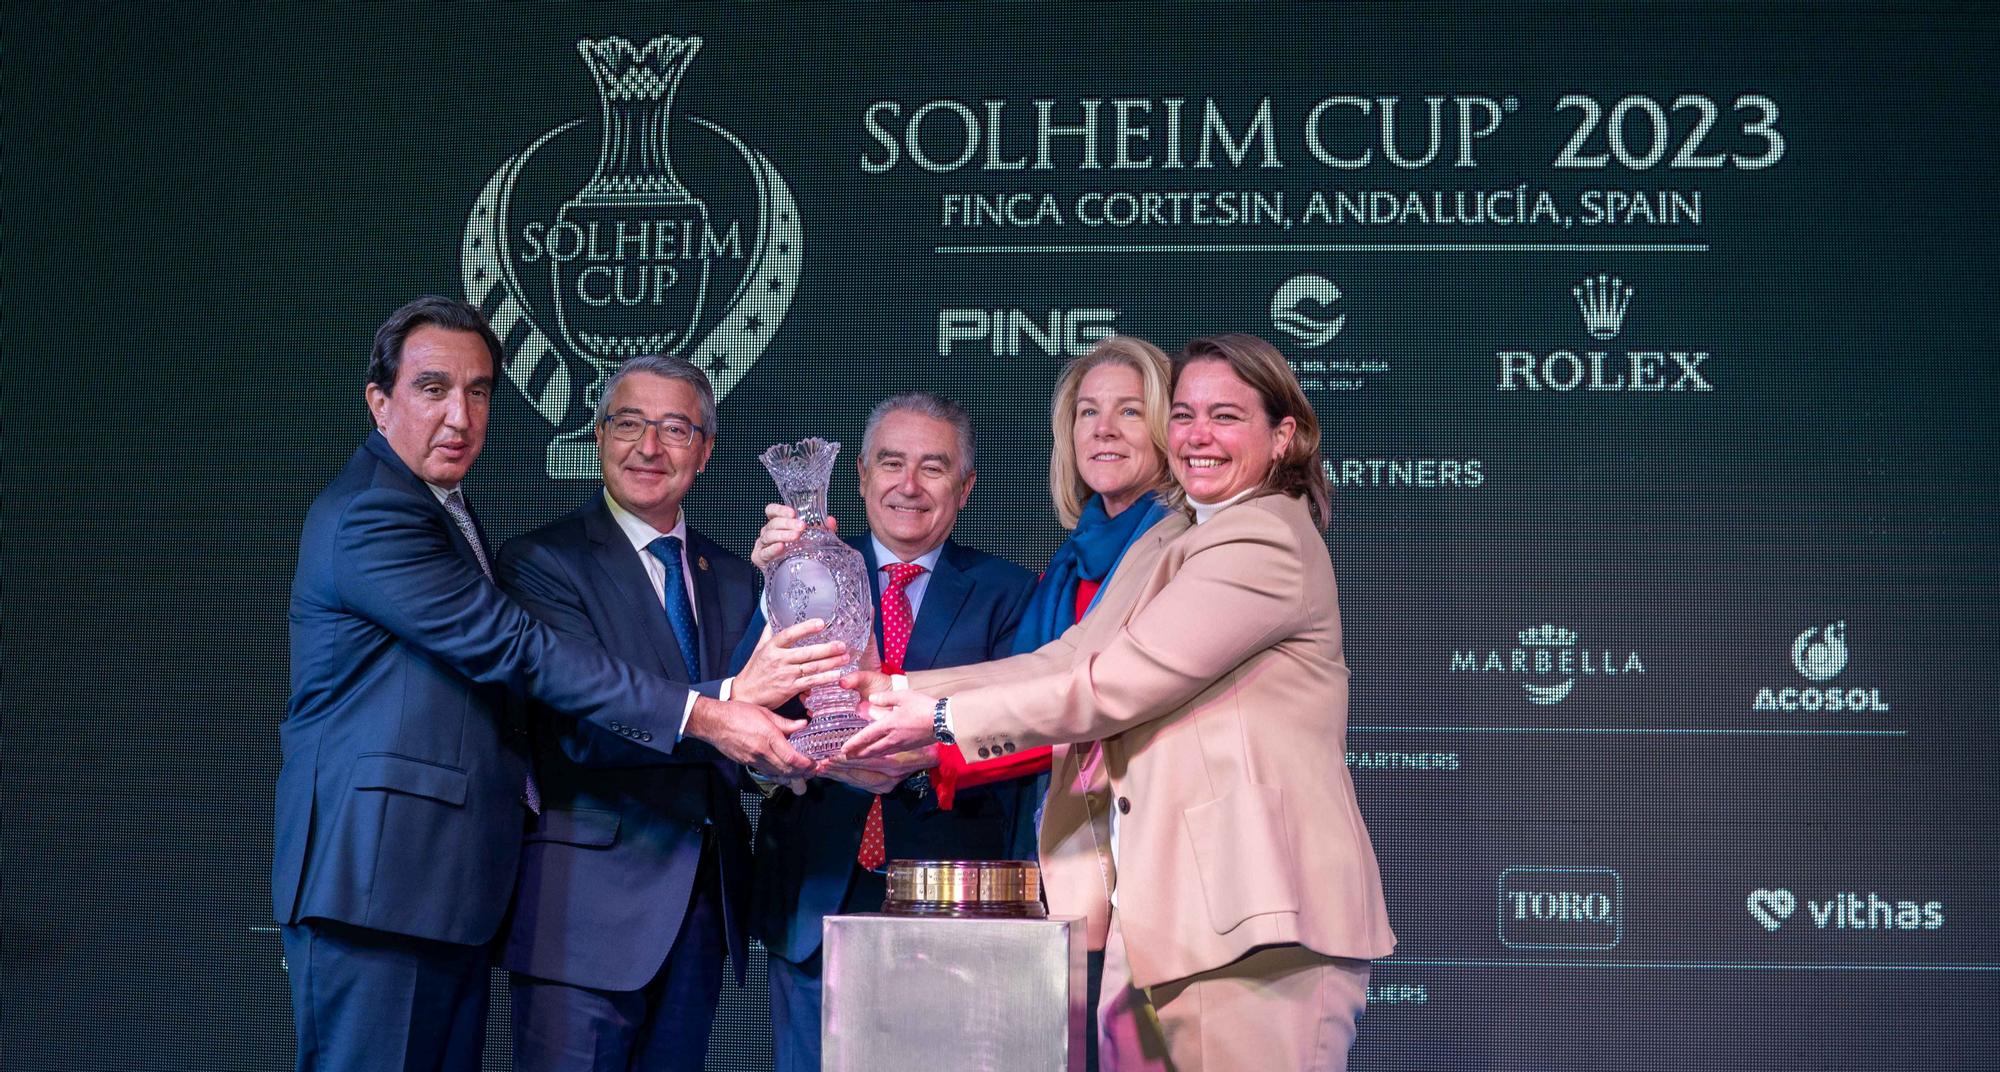 El LET, Finca Cortesín y las autoridades públicas malagueñas realizan un apoyo incondicional a la Solheim Cup